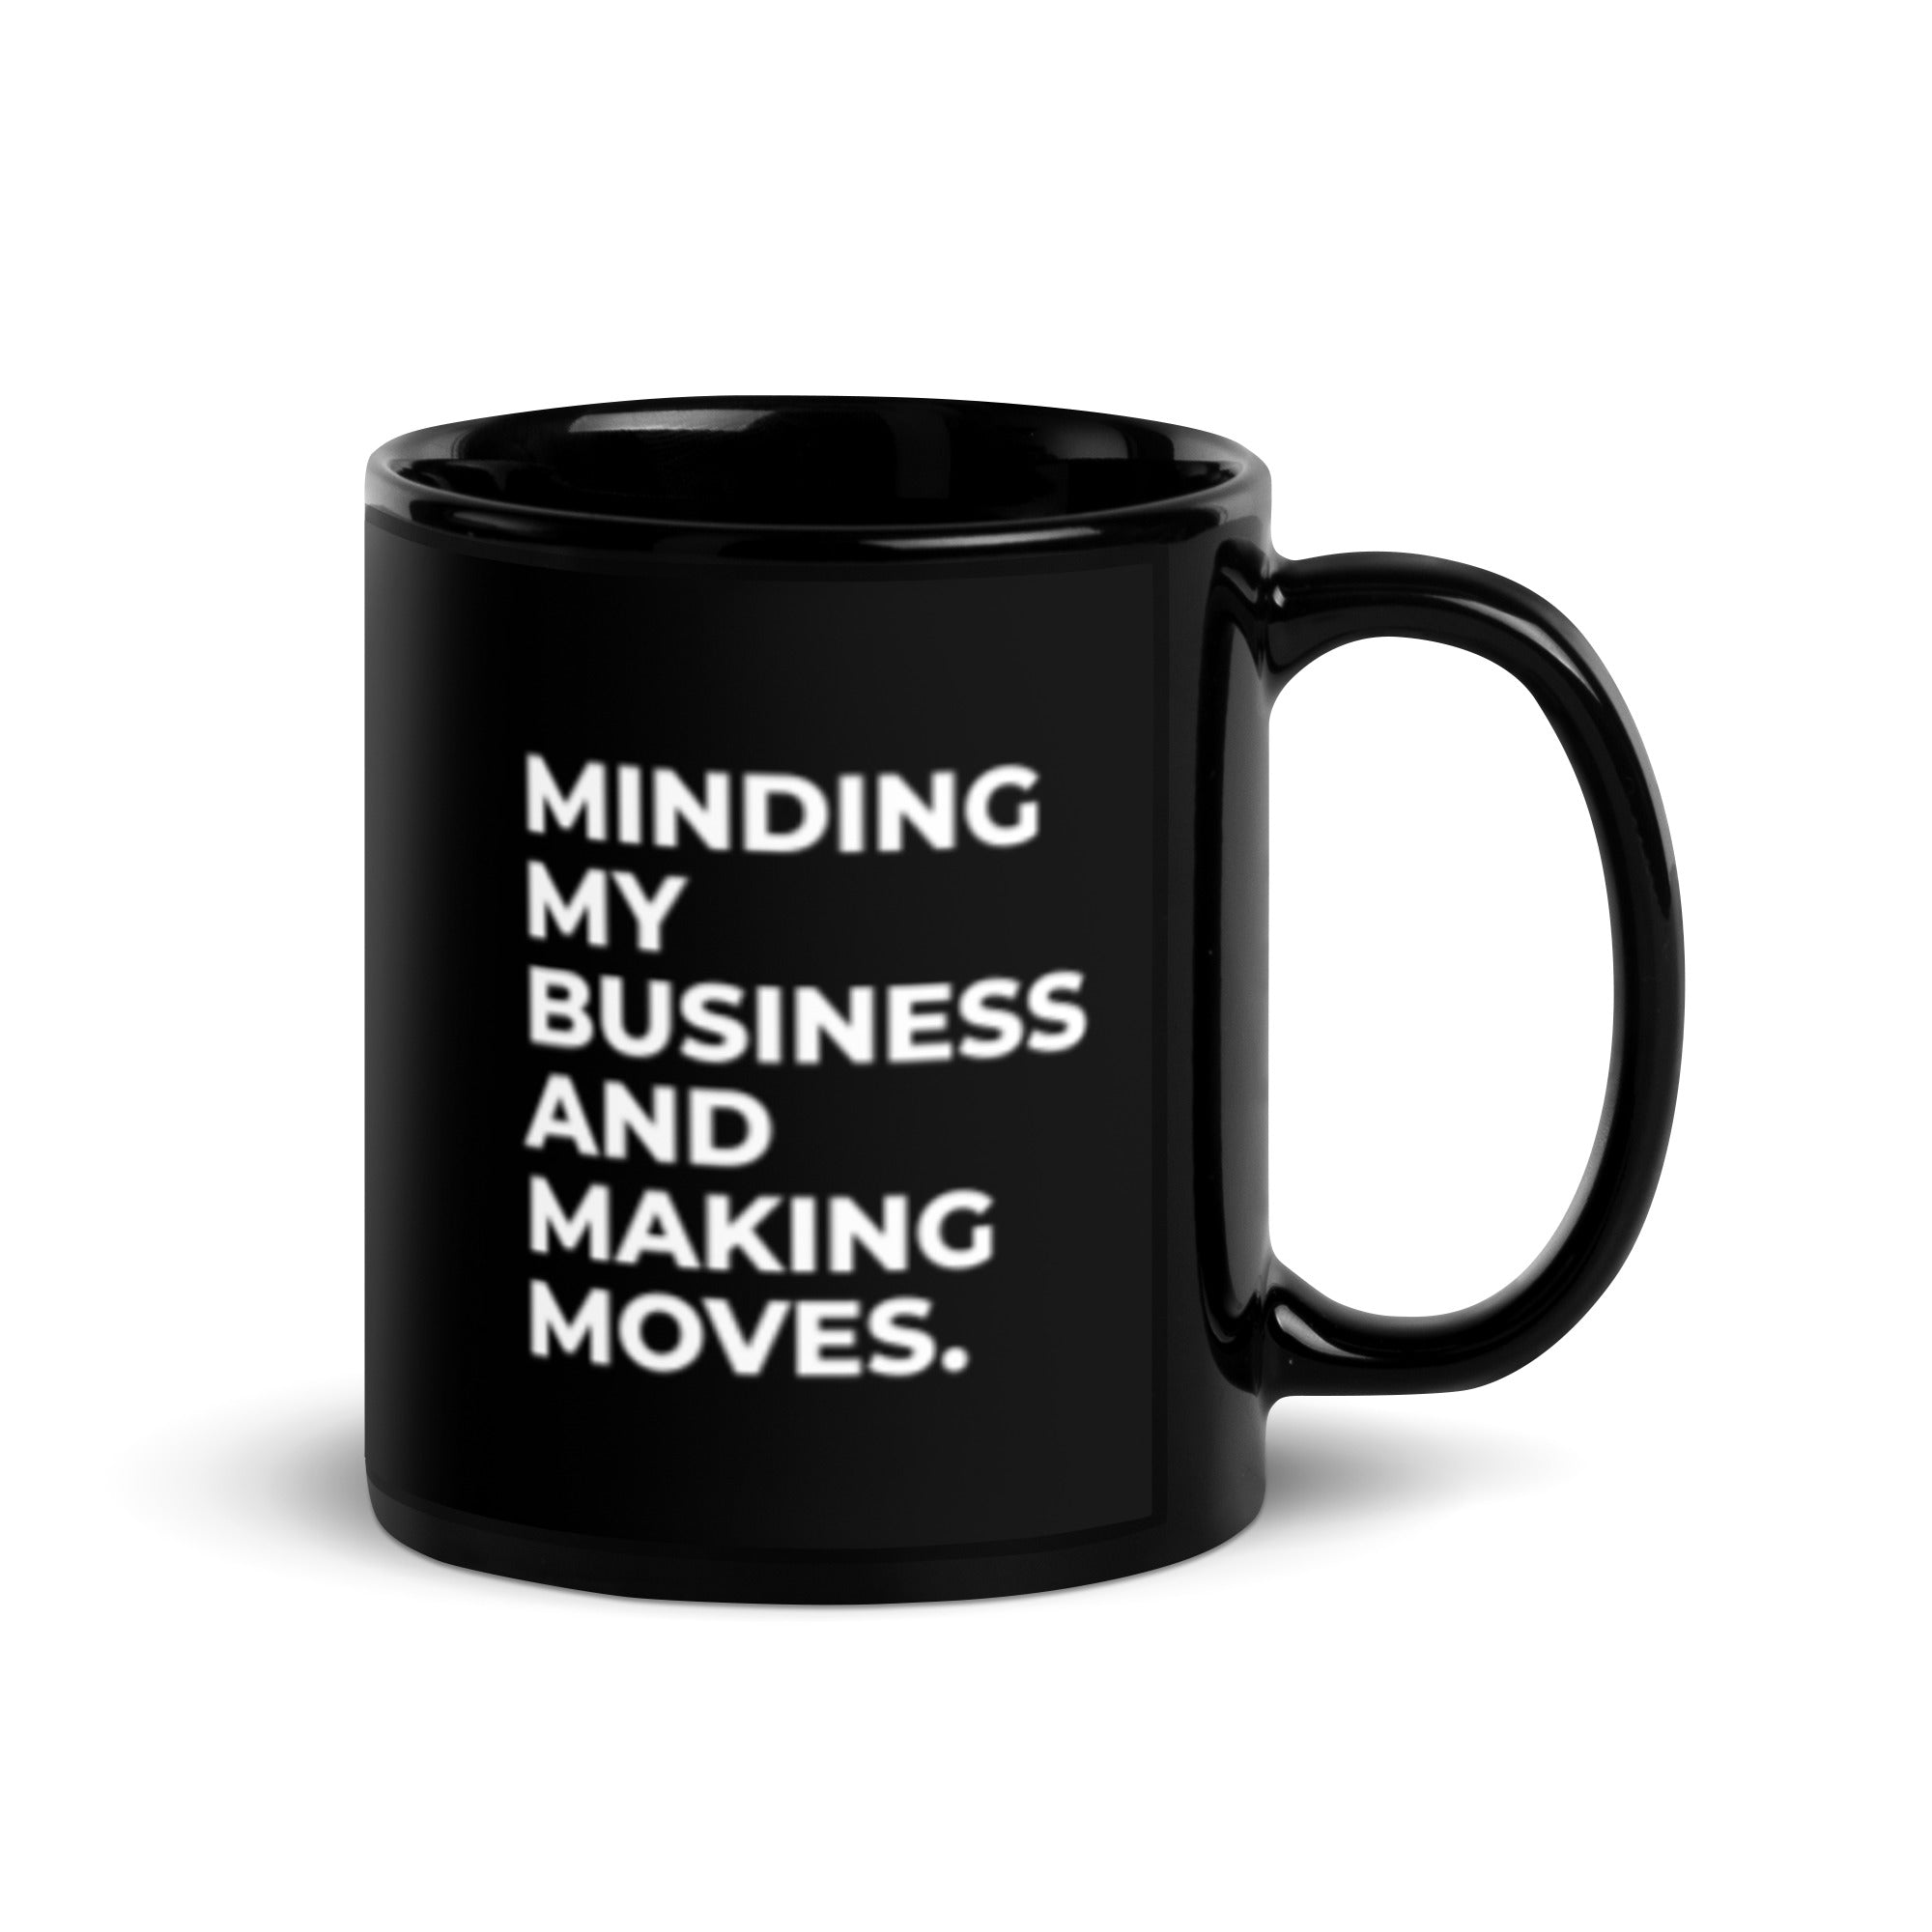 Minding My Business and Making Moves. Black Glossy Mug - Nailah Renae